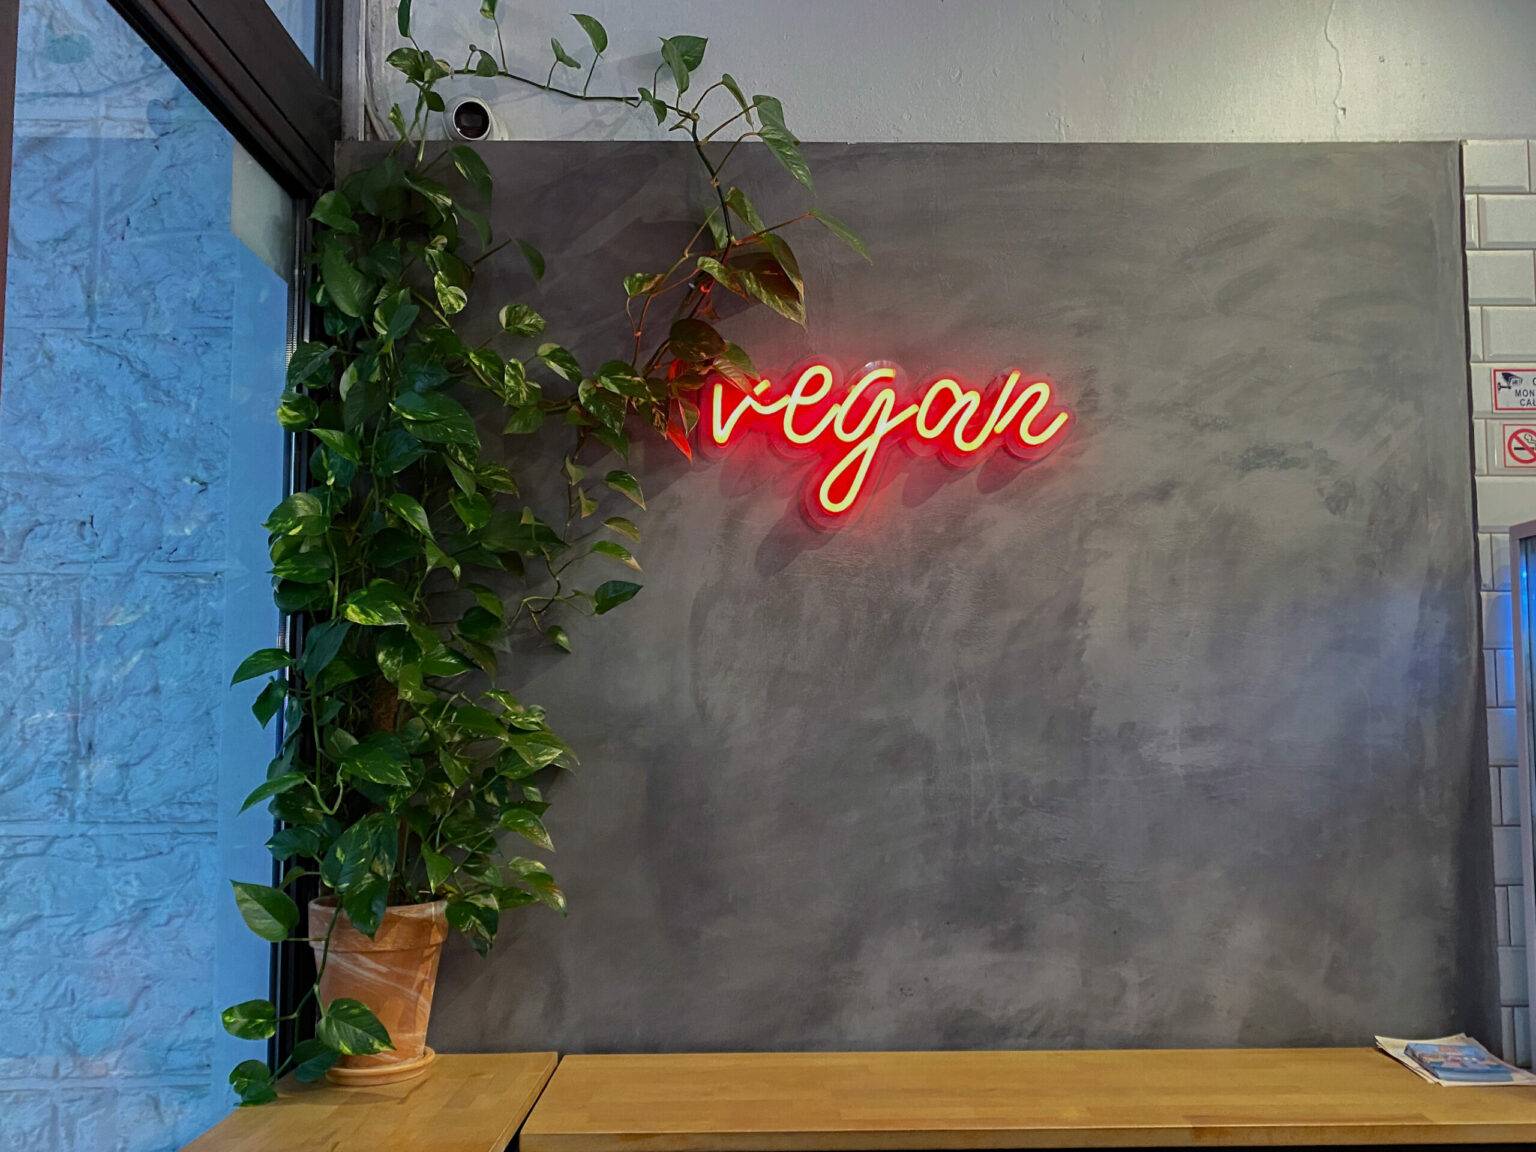 Neonlicht mit der Aufschrift "vegan" an einer grauen Wand.